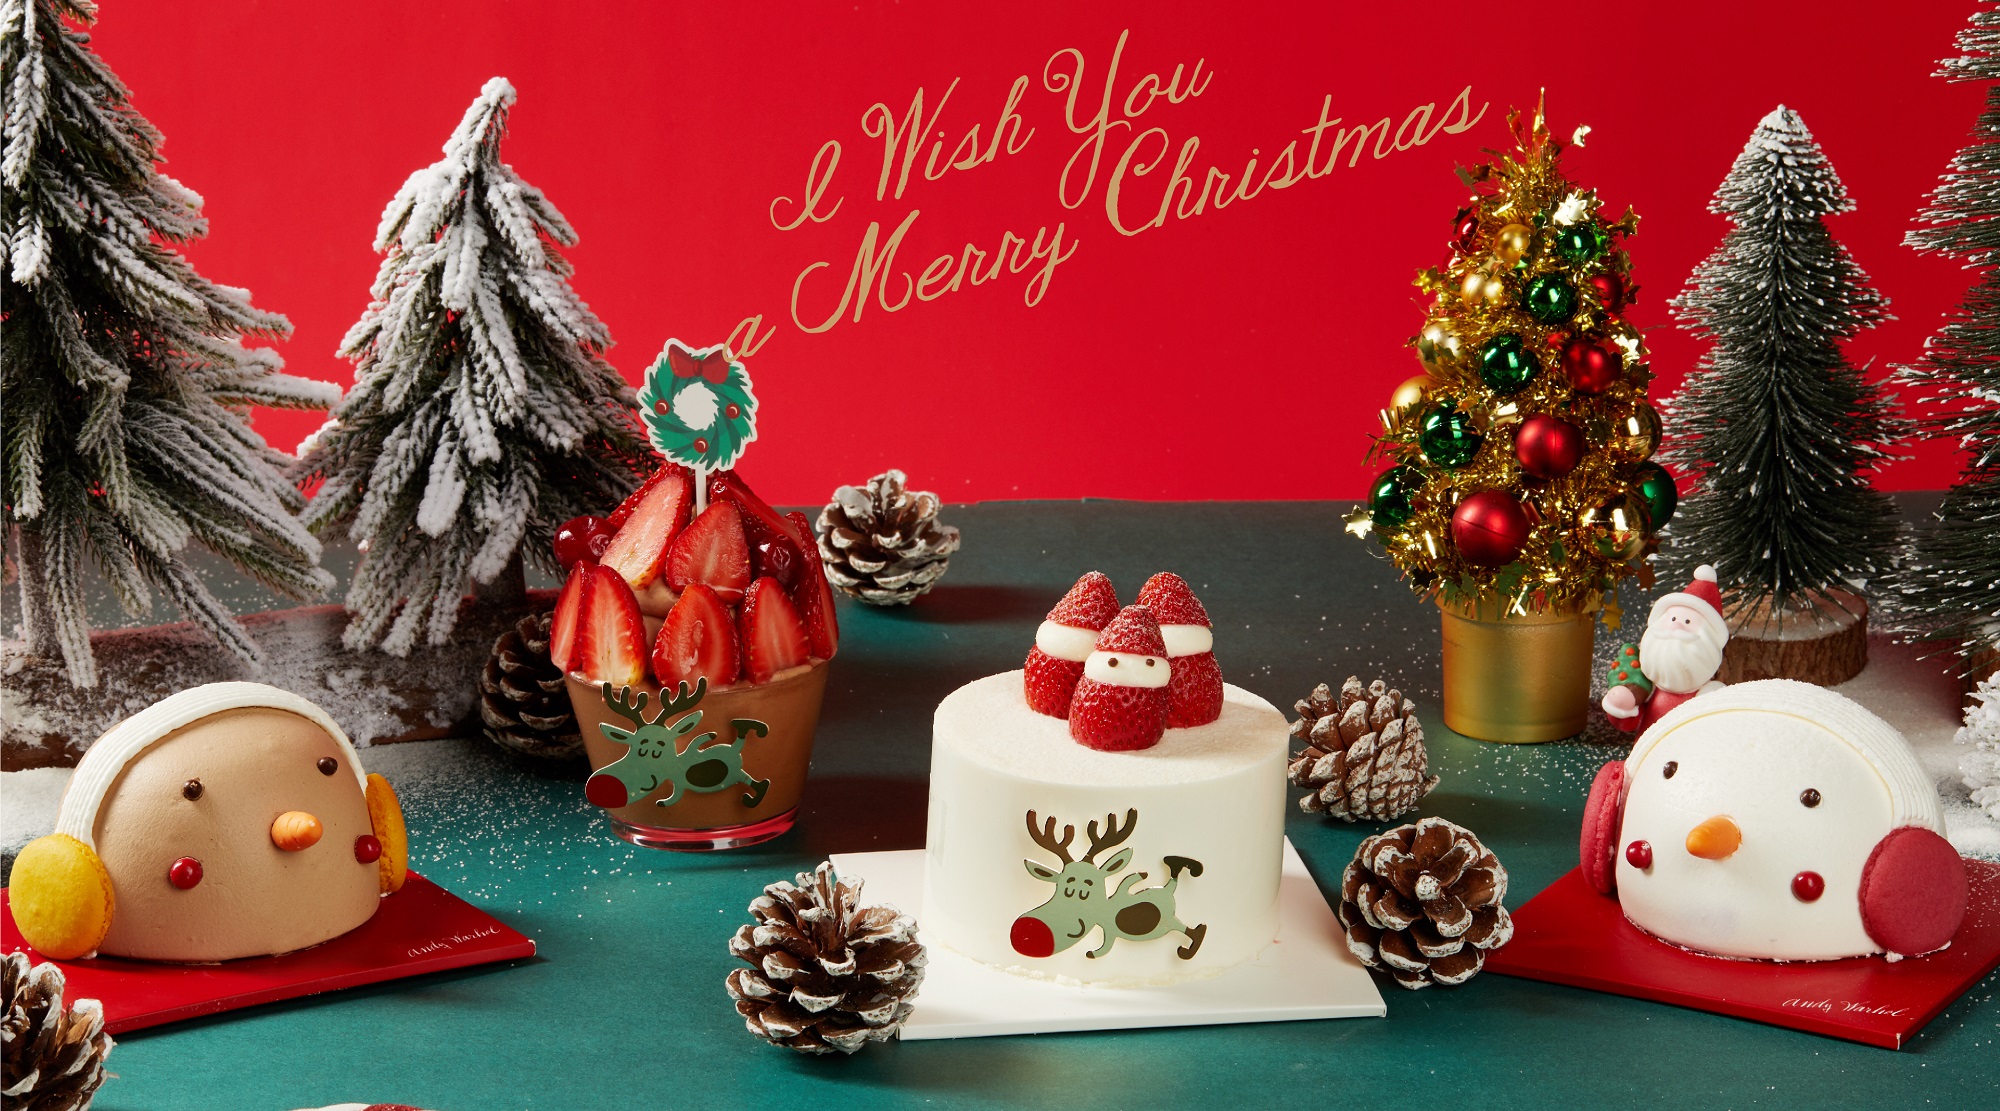 巴黎贝甜*AndyWarhol合作款圣诞蛋糕创意上市 打造一场暖心圣诞